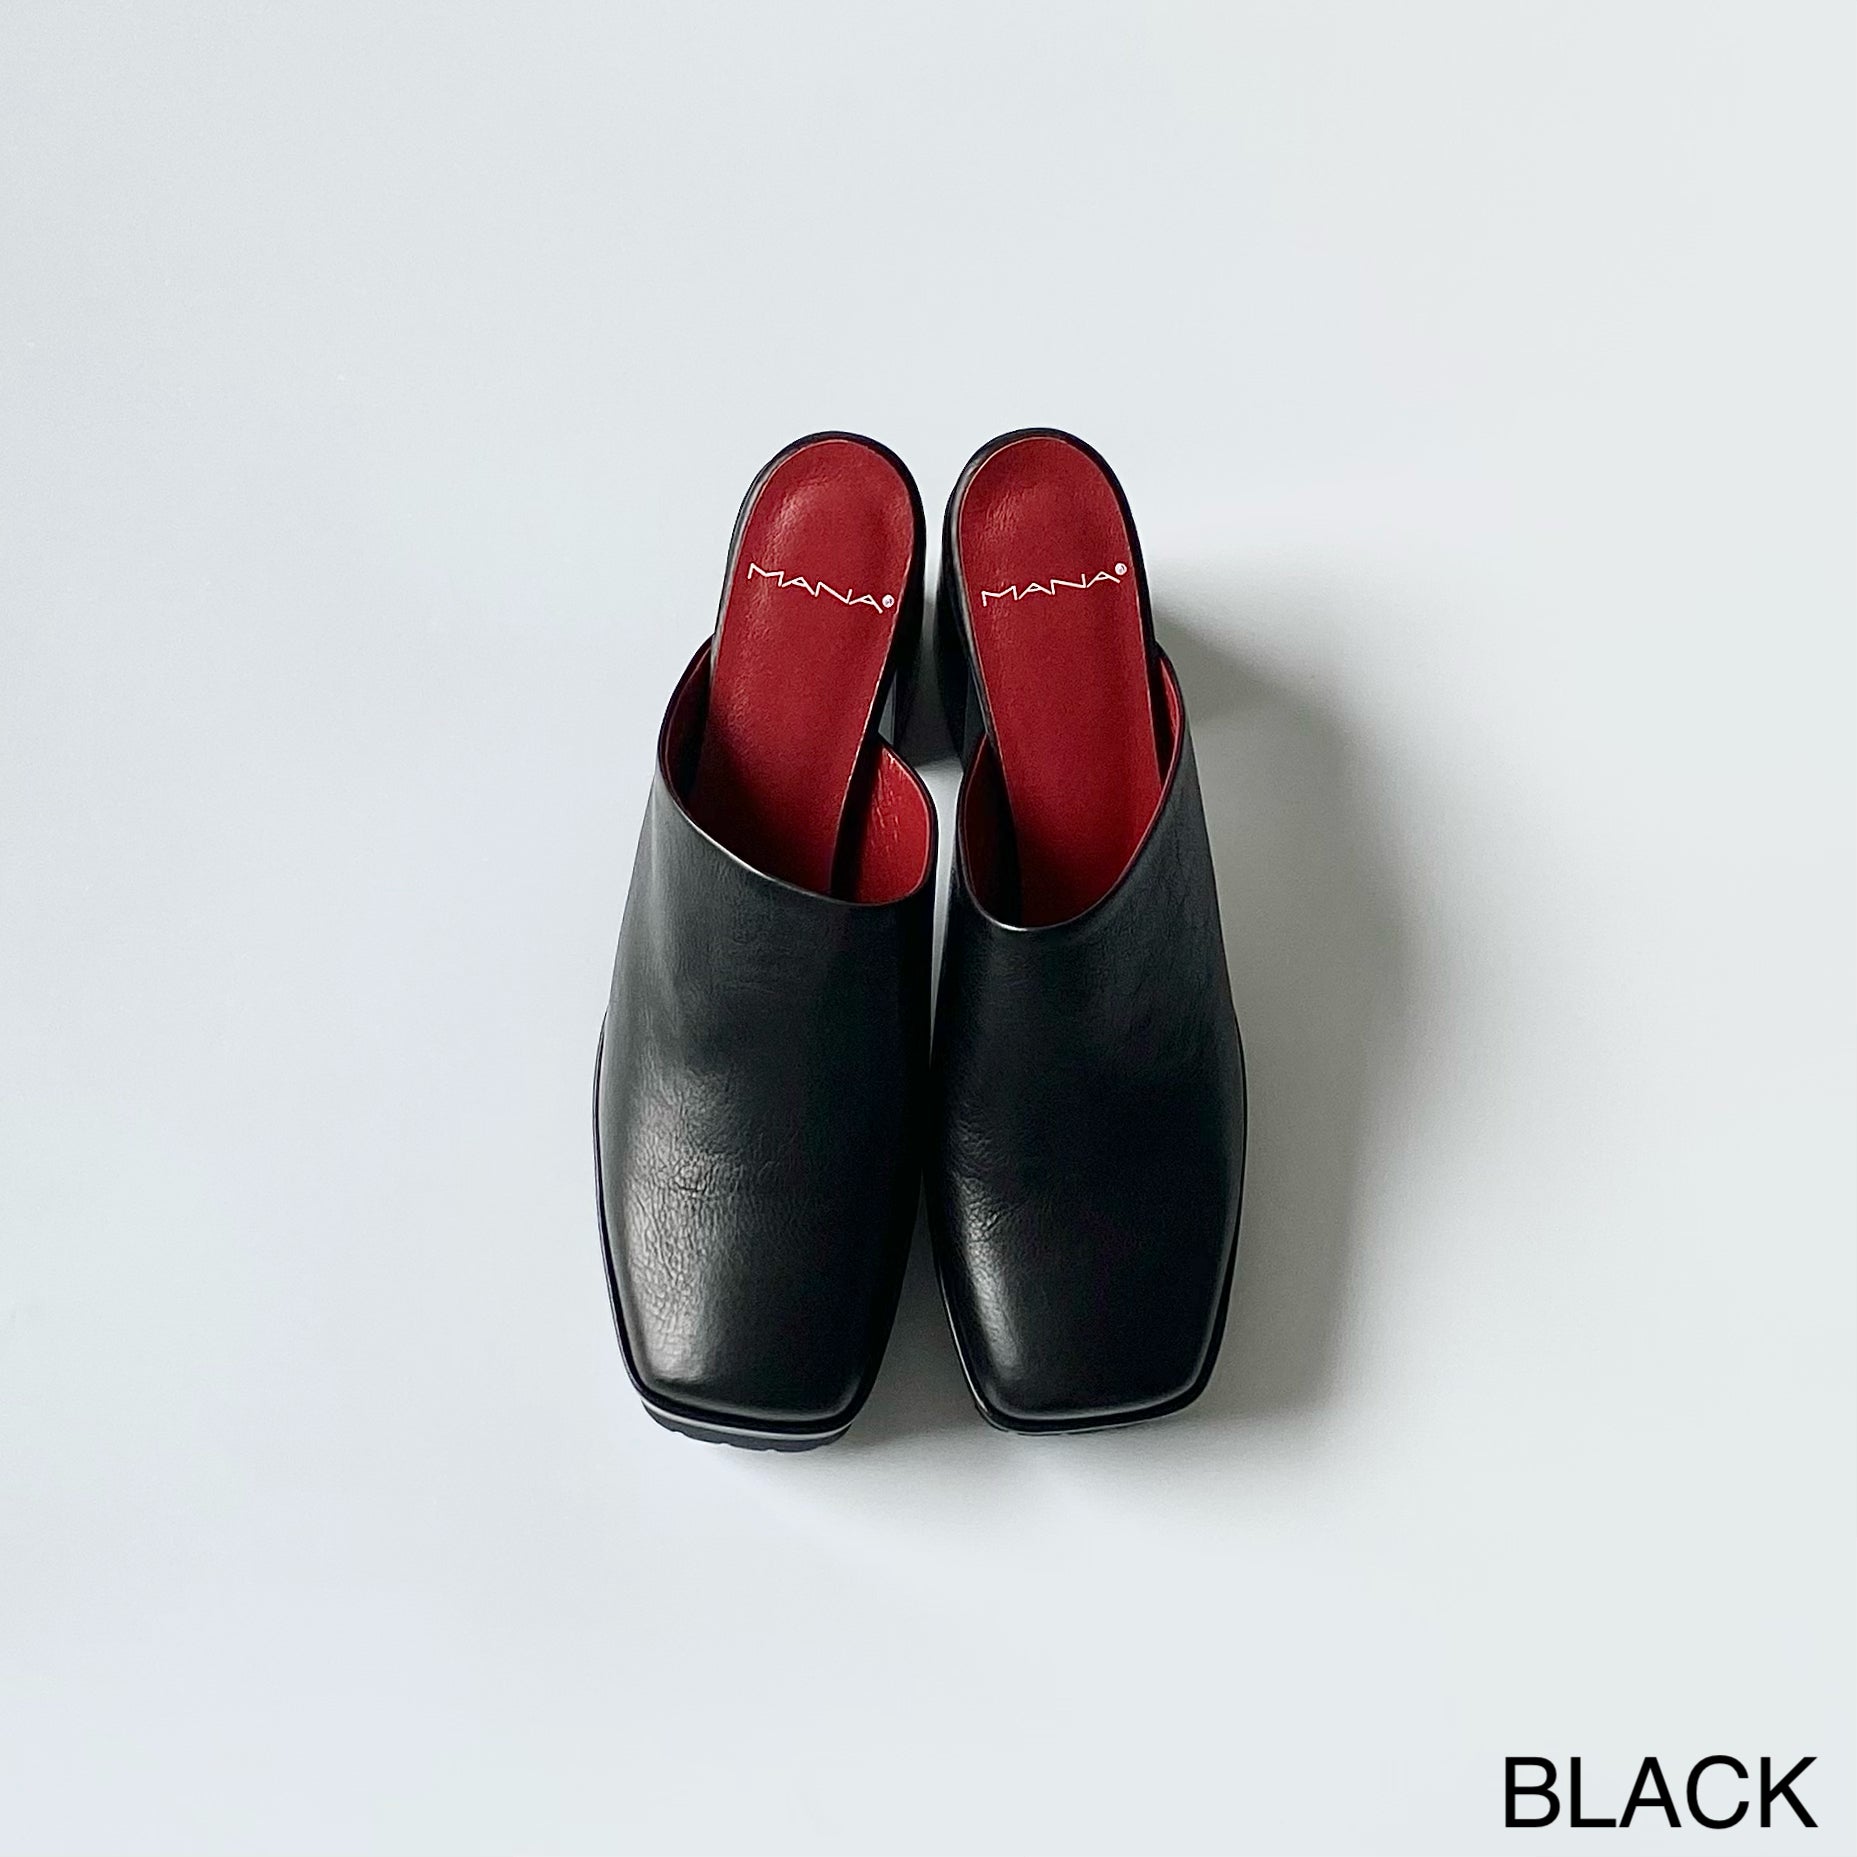 BLACK (LWG) / 35 (22.5cm)